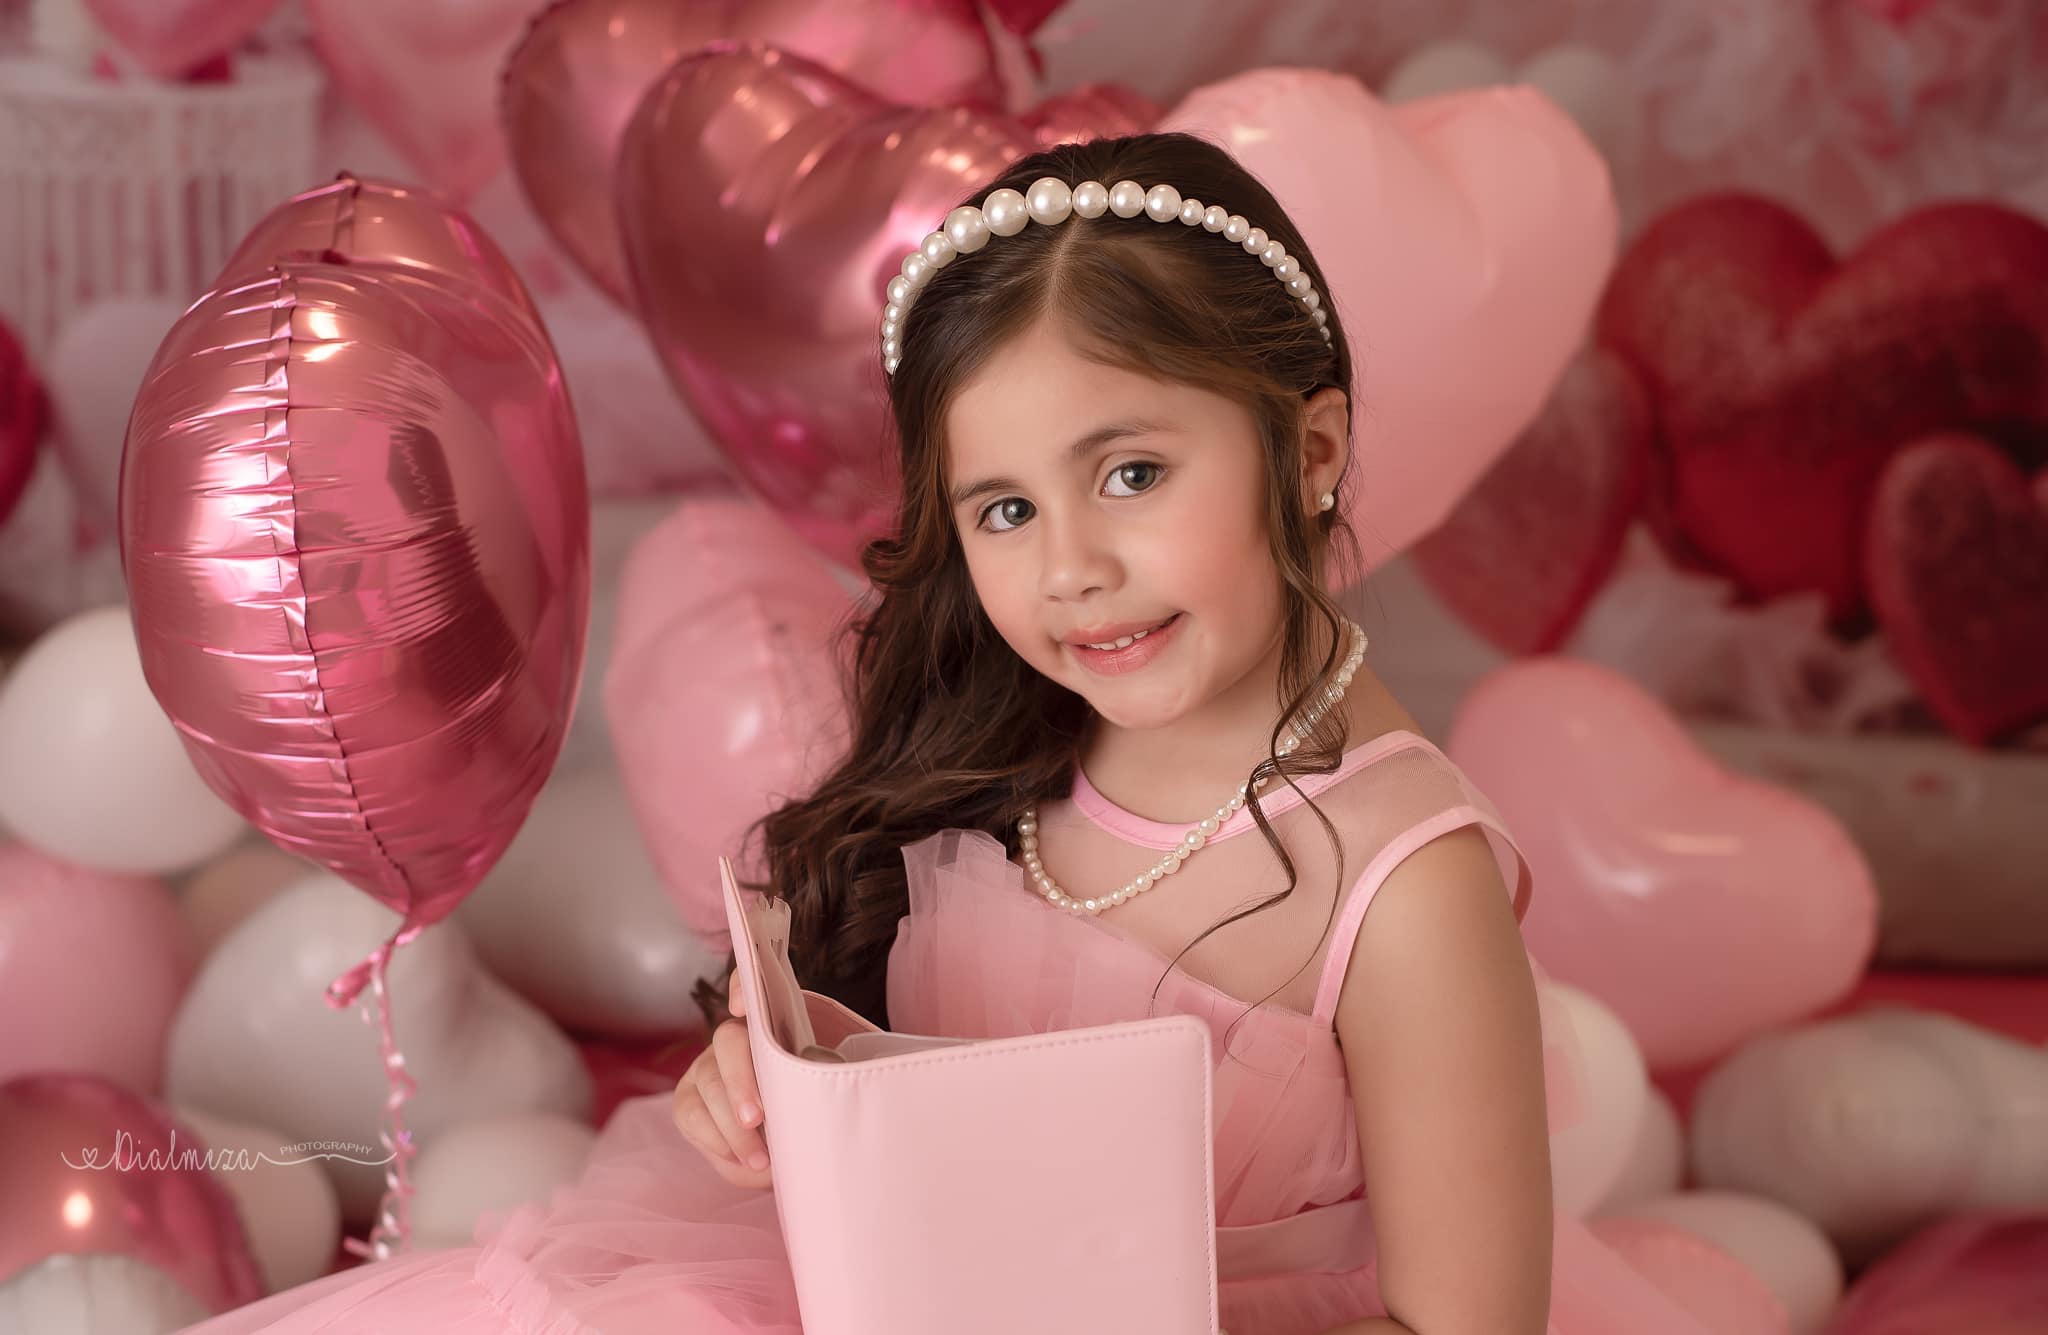 Super Sale-A Kate Valentinstag Rosa Liebe Herz Ballon Romantische Raum Hintergrund von Emetselch